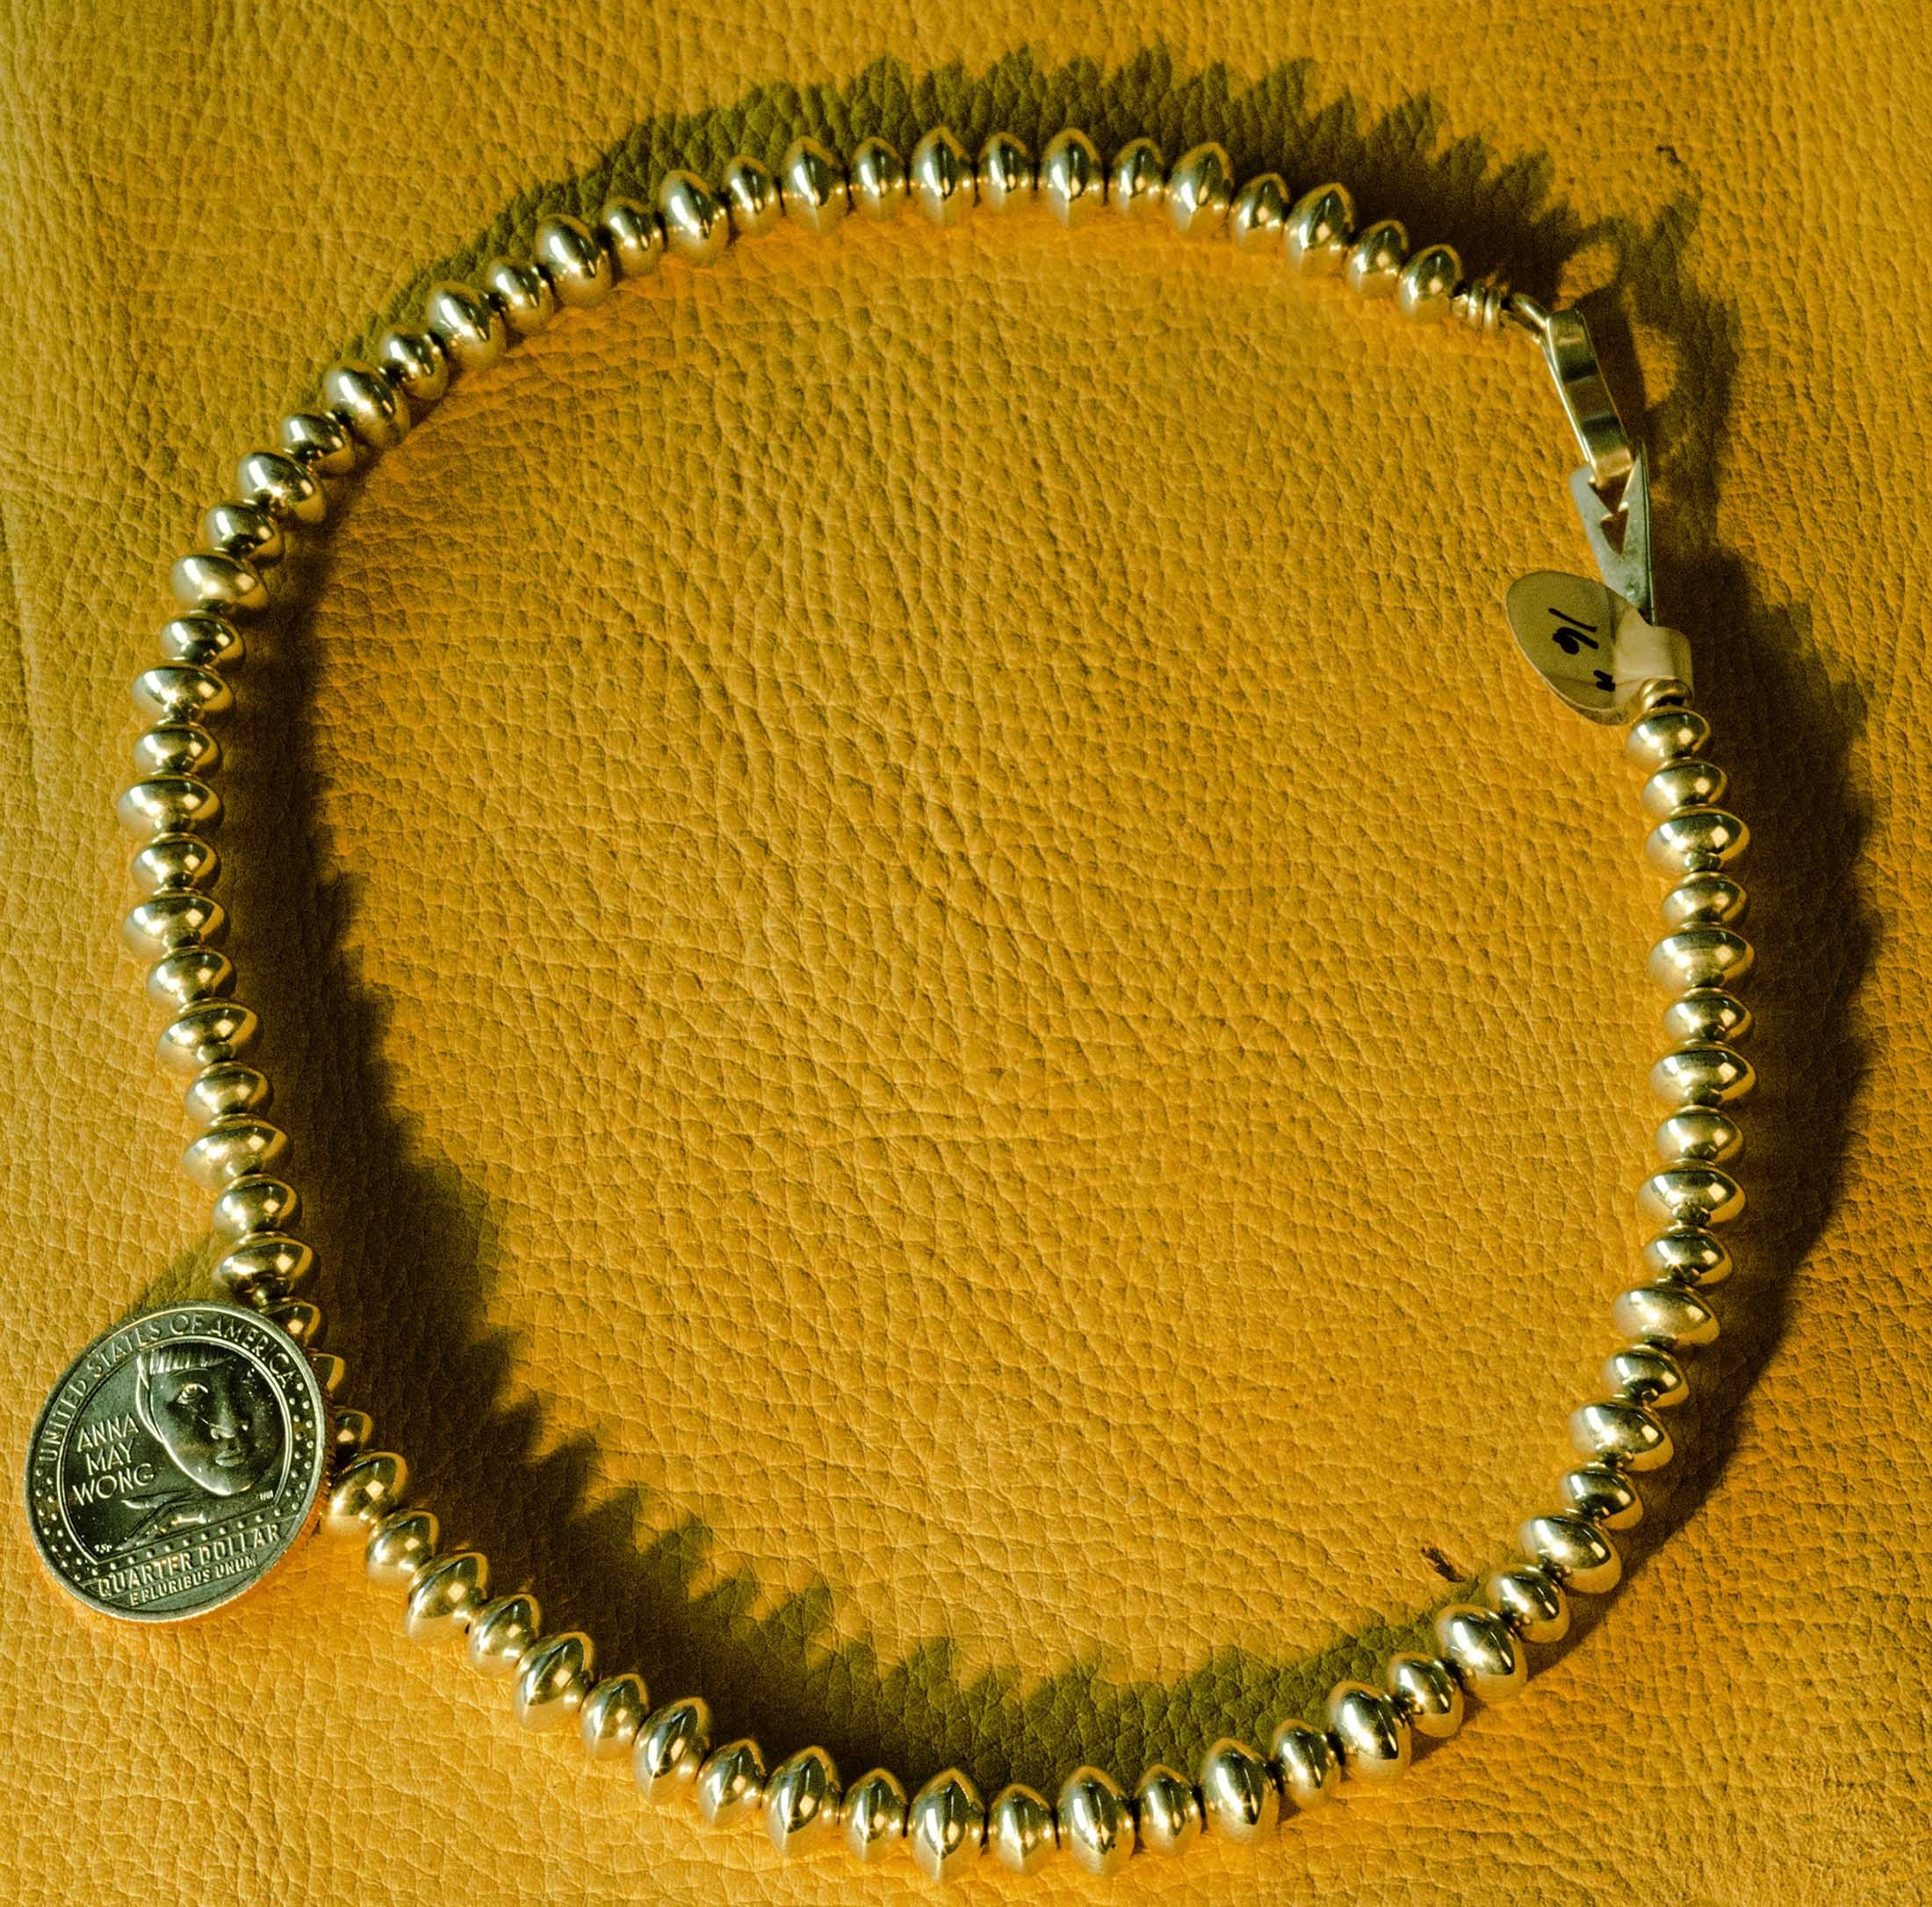 Al Joe Silver Bead Necklace -16" long